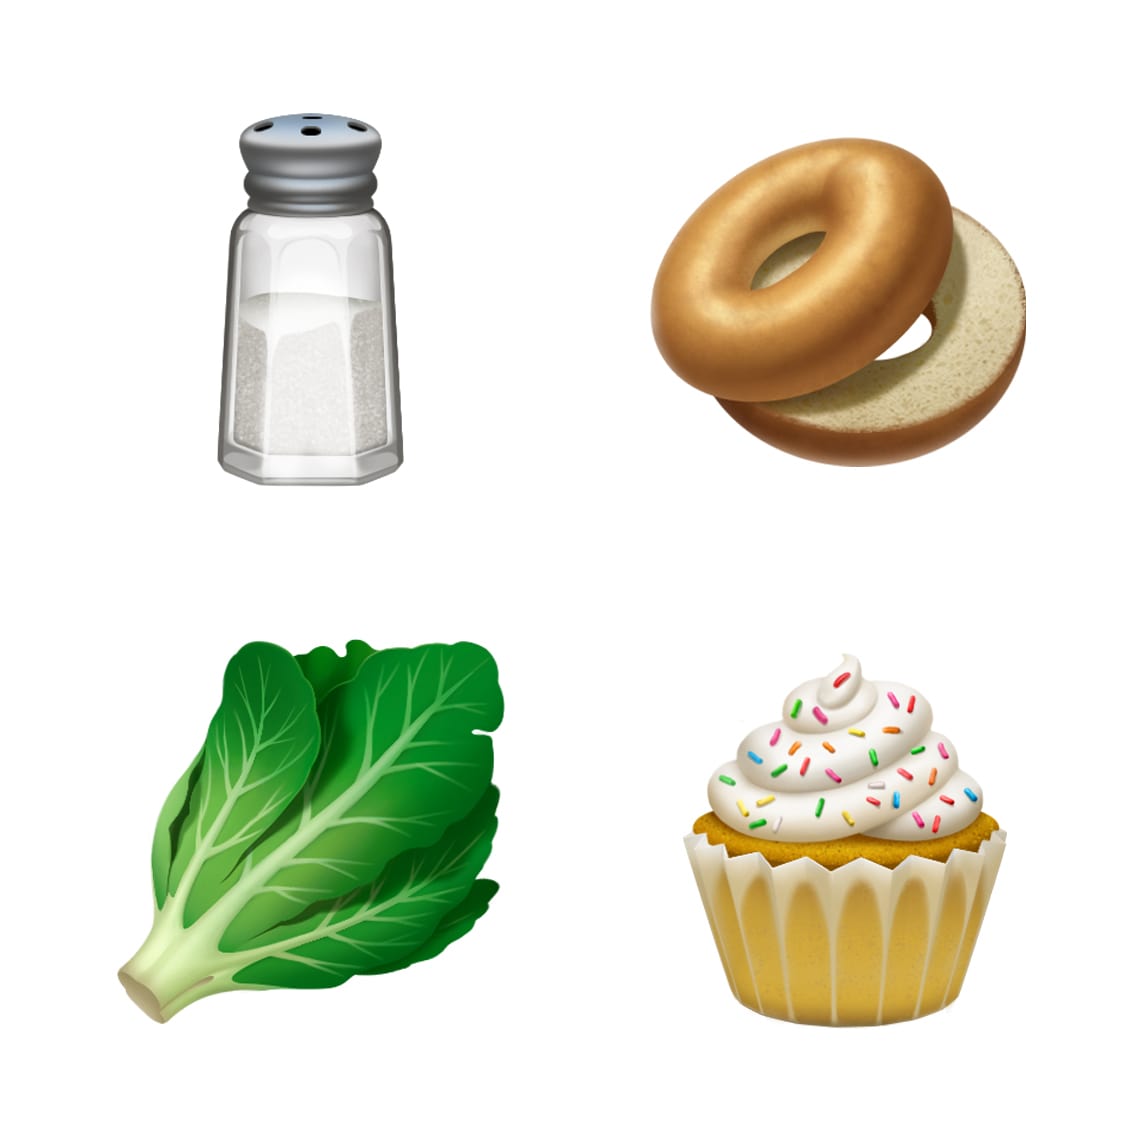 ios-121-emoji-update-salt-lettuce-bagel-cupcake